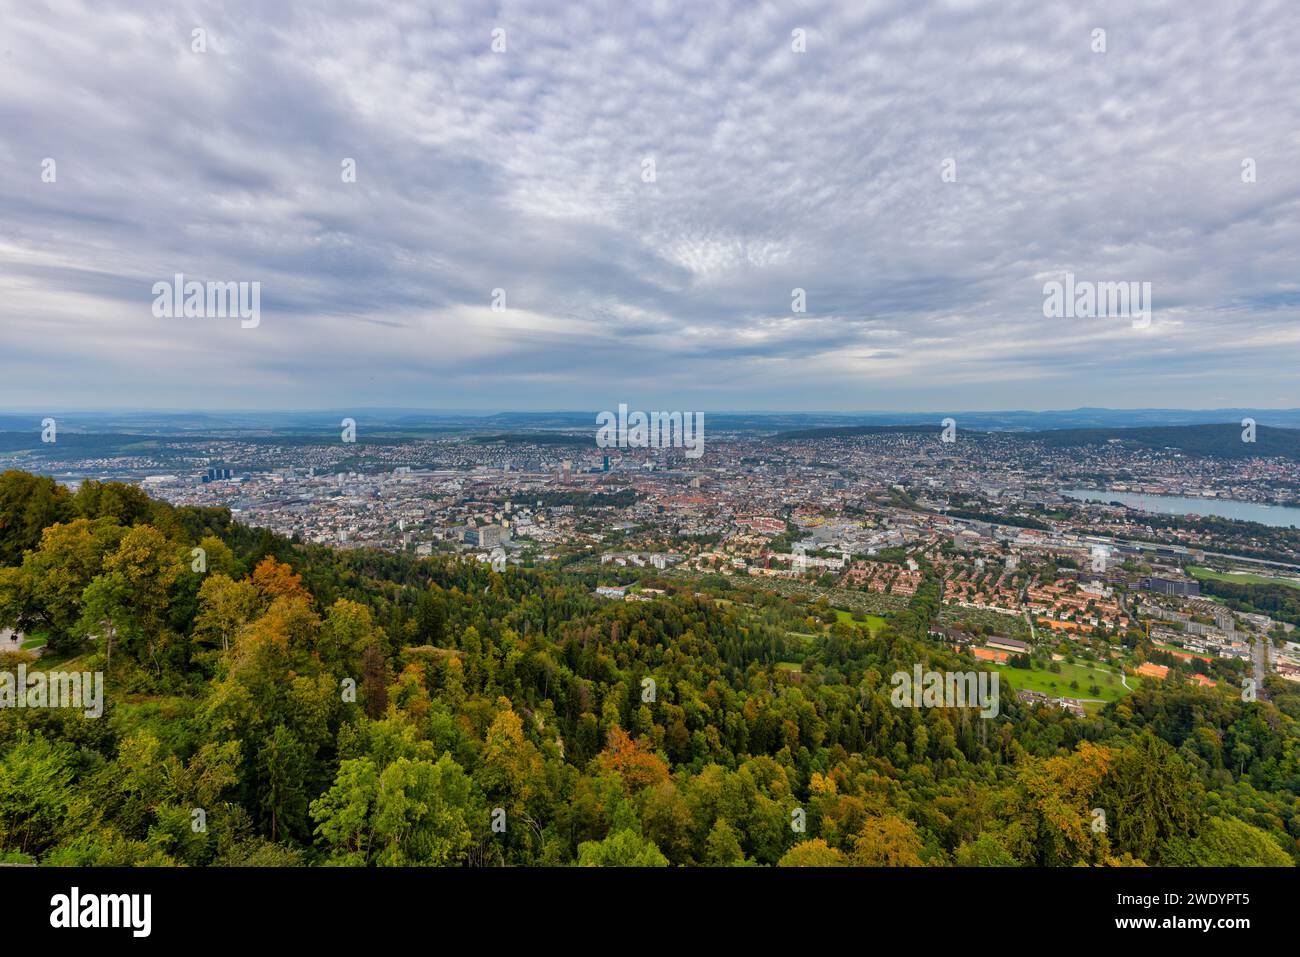 Aerial view of the city of Zurich in Zurich, Switzerland. Stock Photo